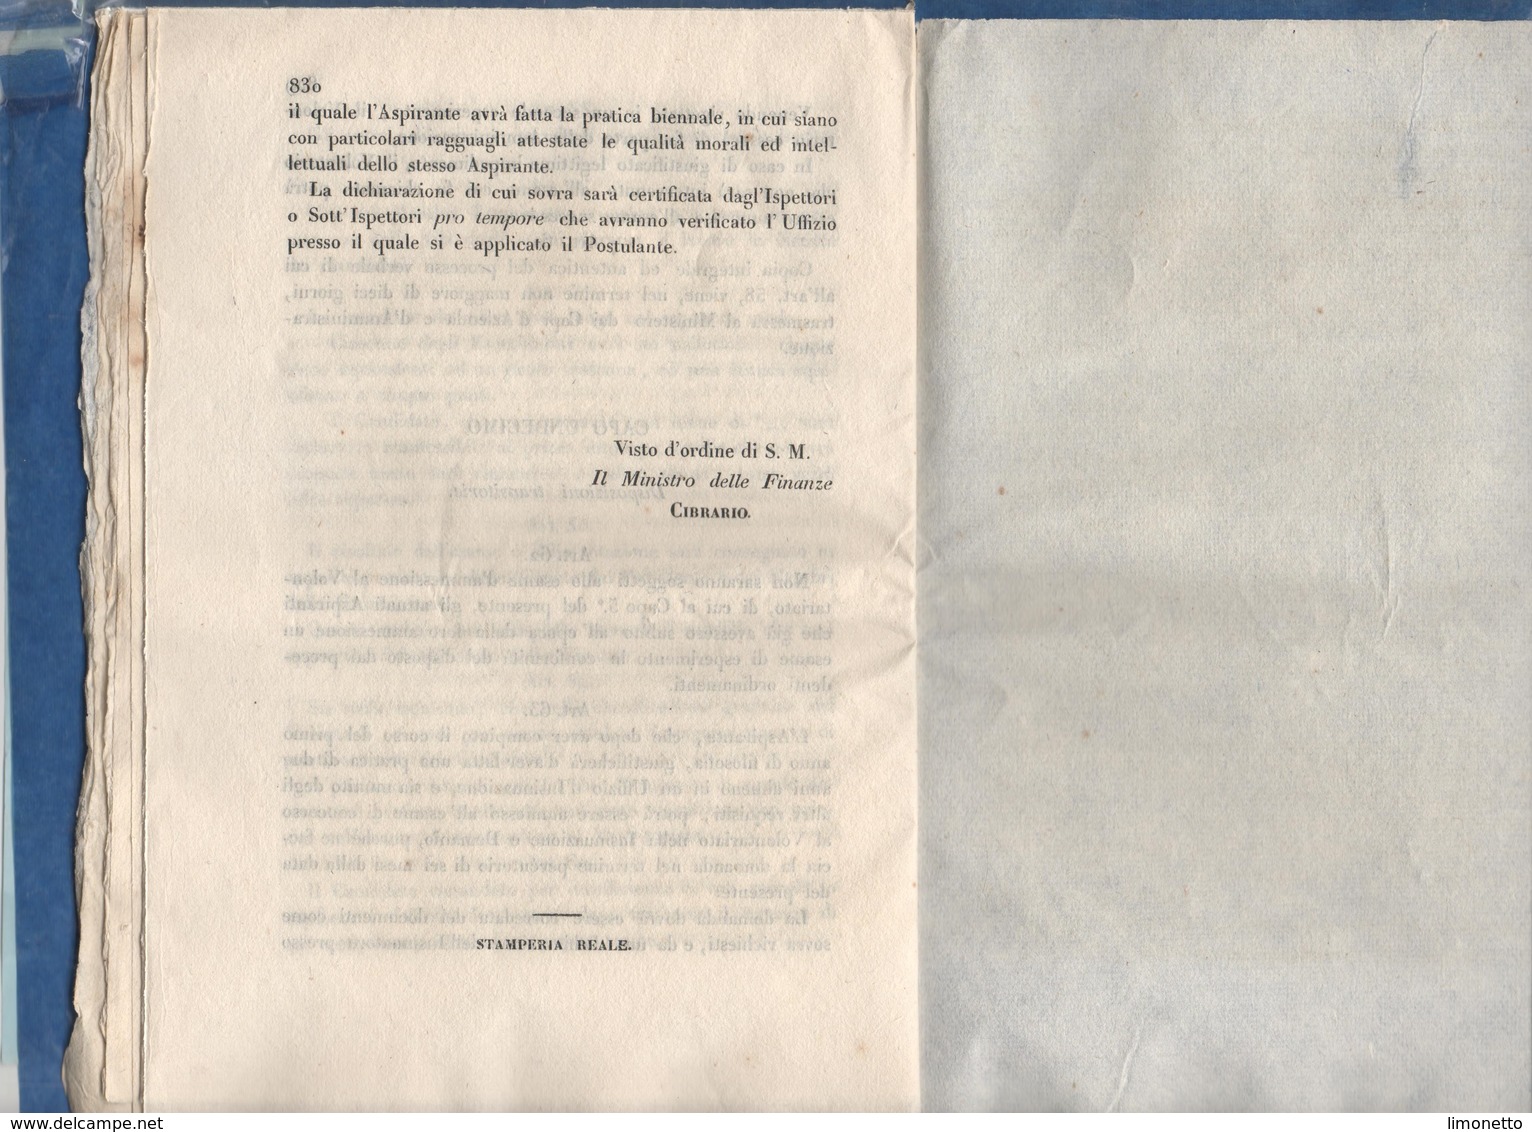 ITALIE-Circulaire De Vittorio Emanuele II  Du 28 10 1852-pour L'admission Des éléves Au Ministère Des Finances -20 Pages - Décrets & Lois